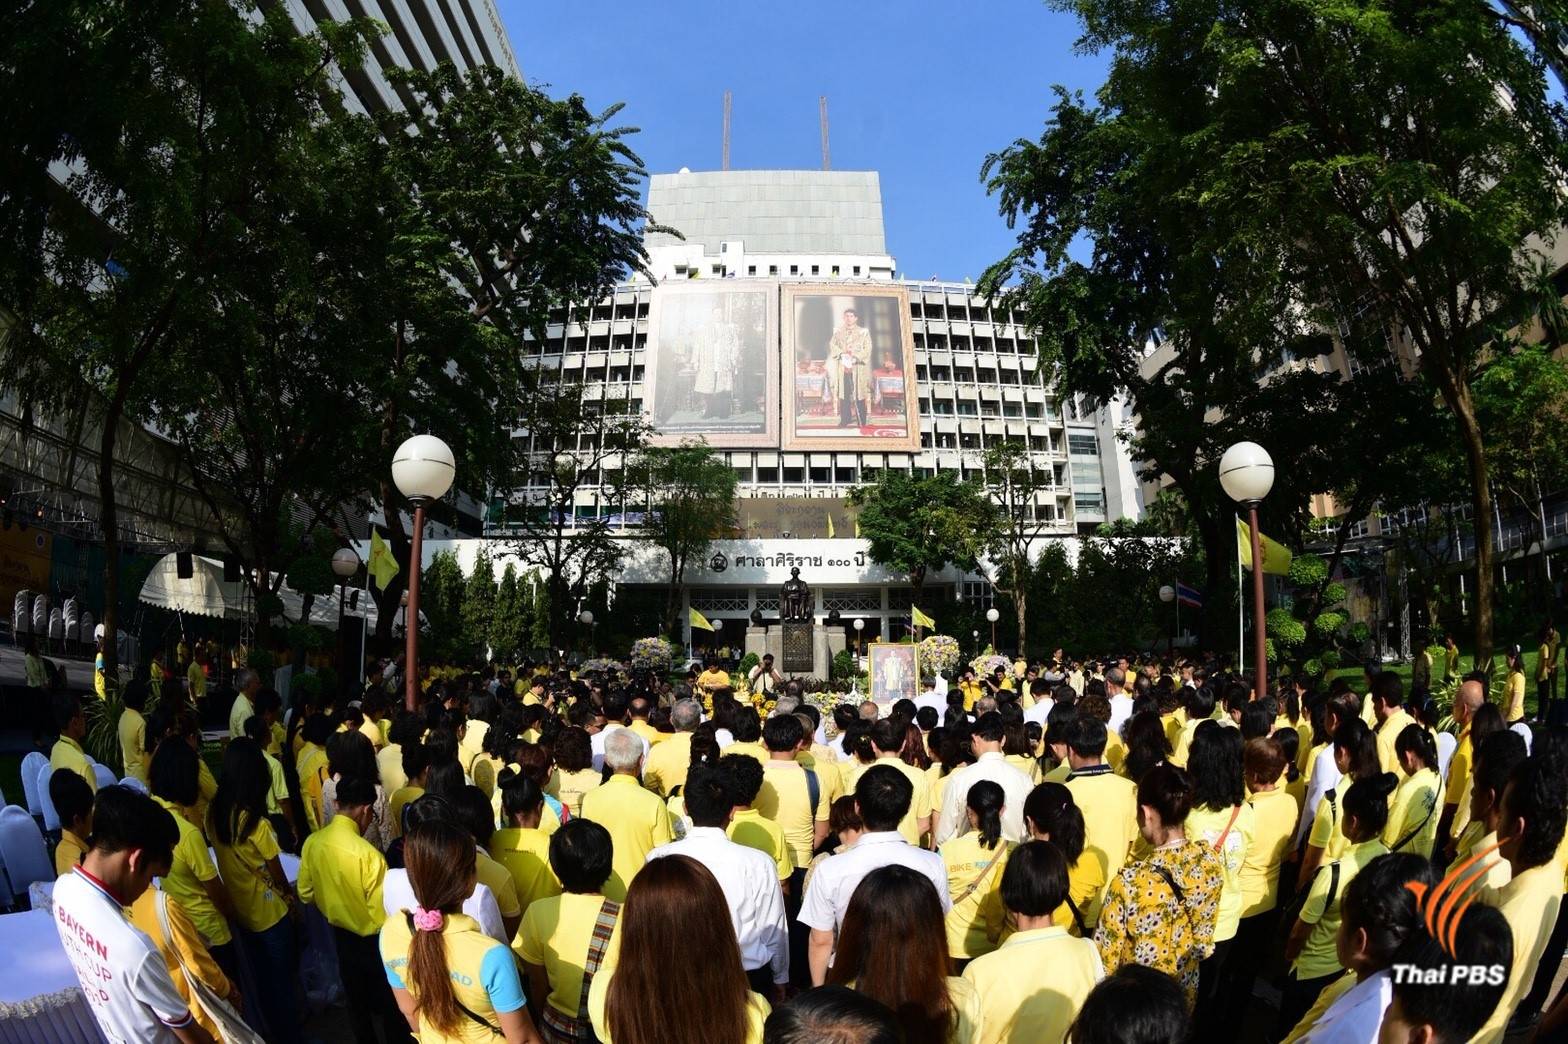 ประชาชนพร้อมใจสวมเสื้อสีเหลืองร่วมงาน  “ศิระกรานพระภูบาลนวมินทร์”  ณ โรงพยาบาลศิริราช